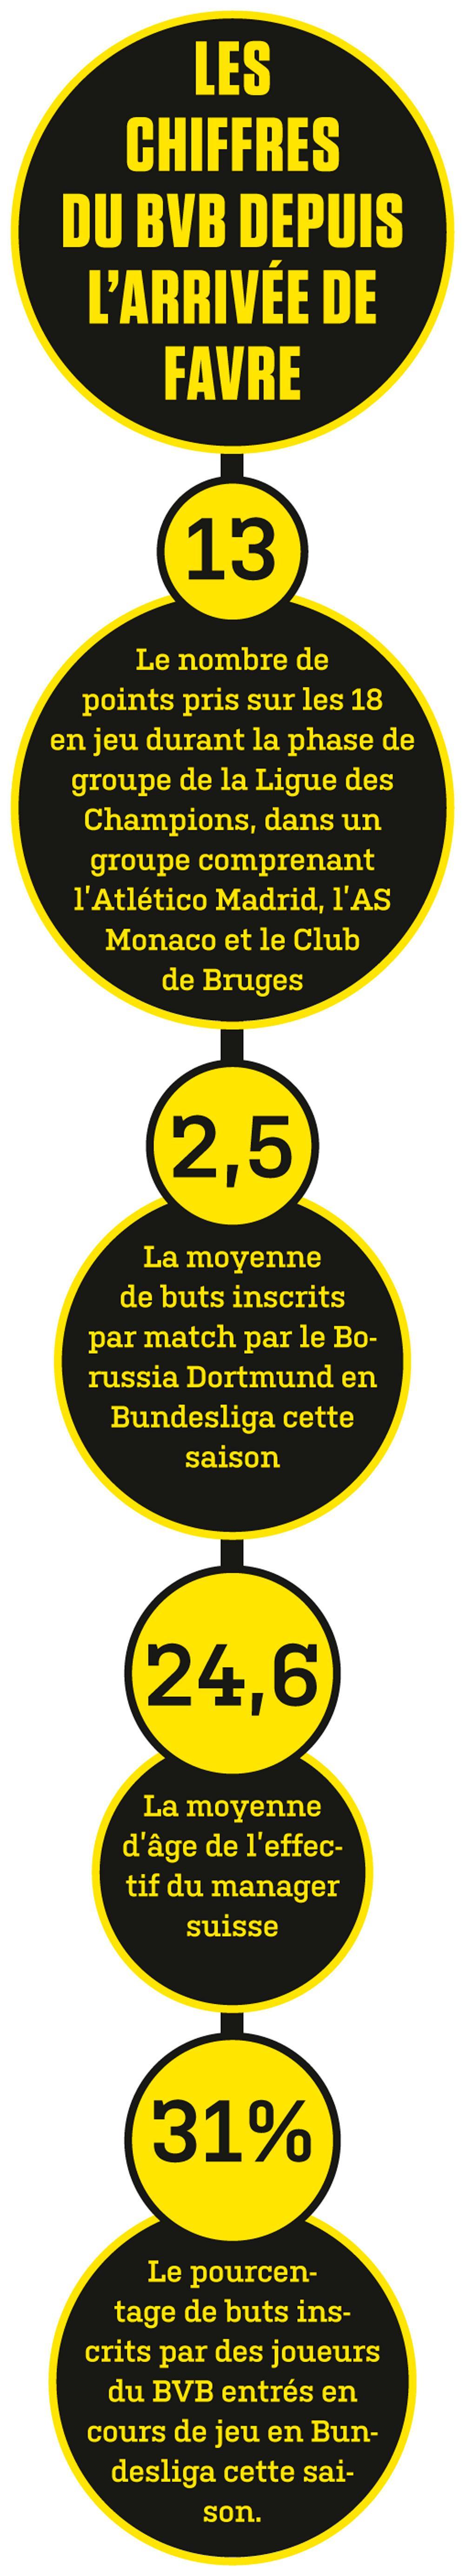 L'orFavre du Borussia Dortmund